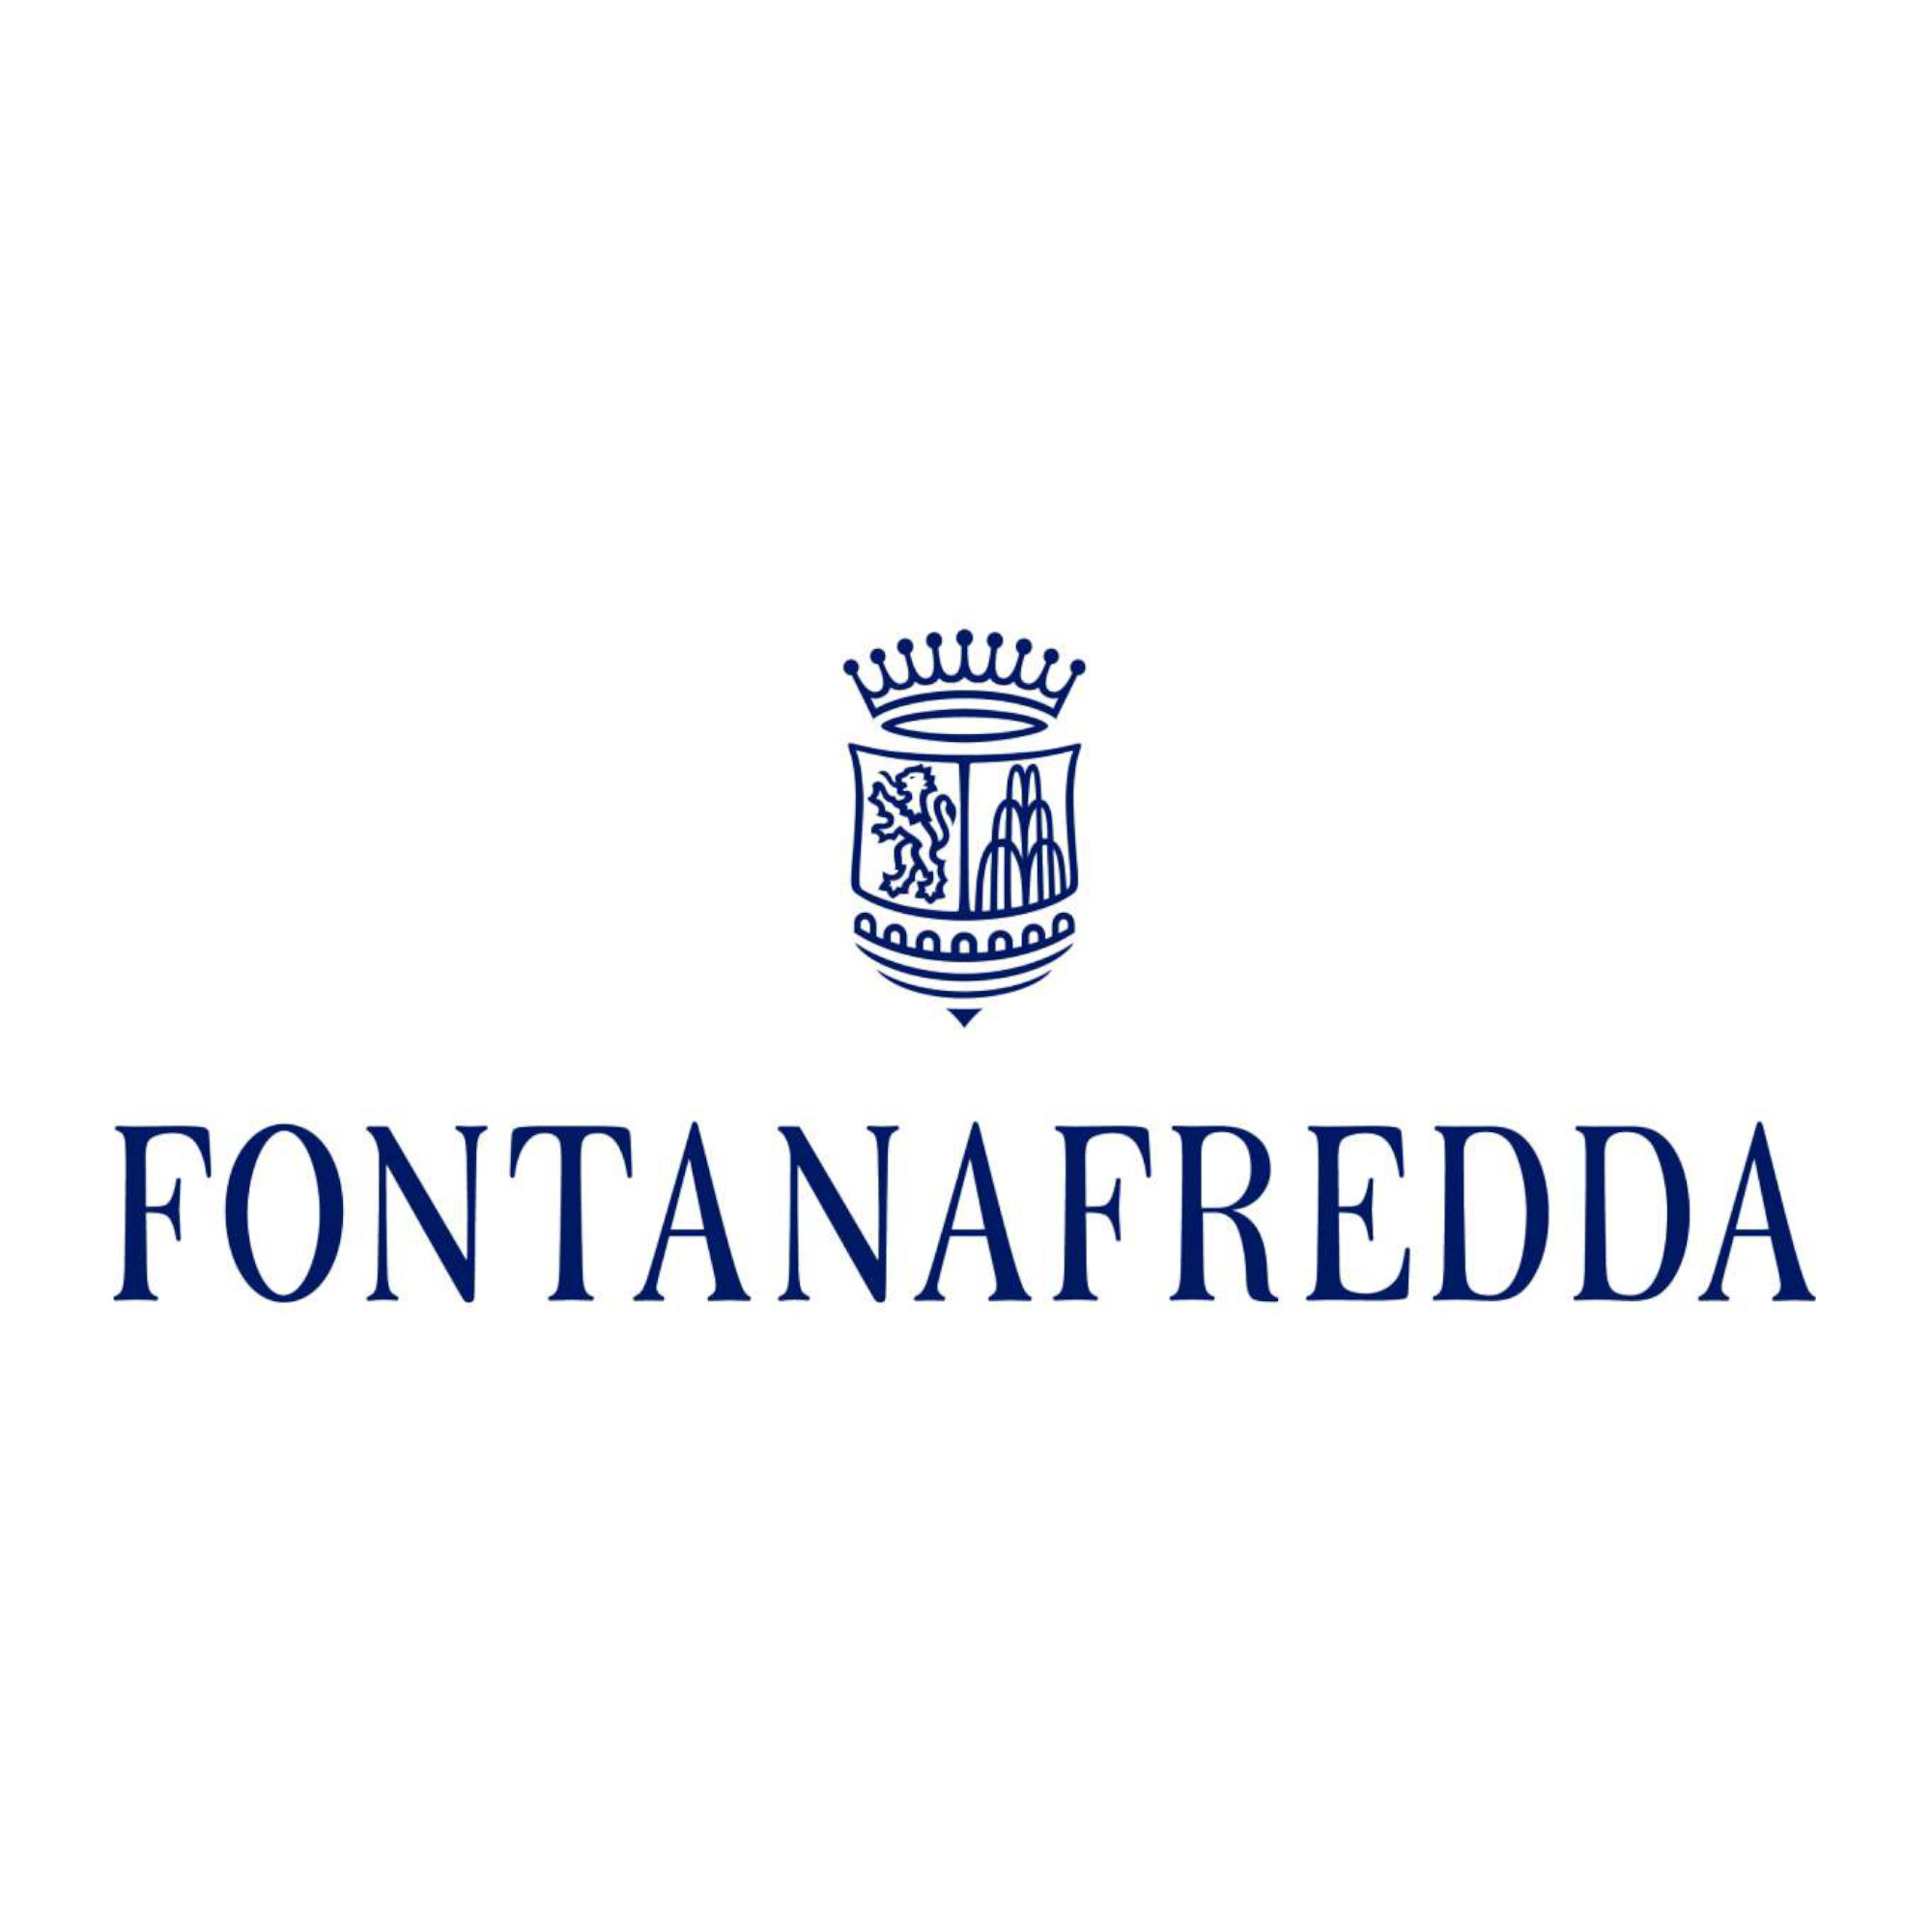 Fontanafredda